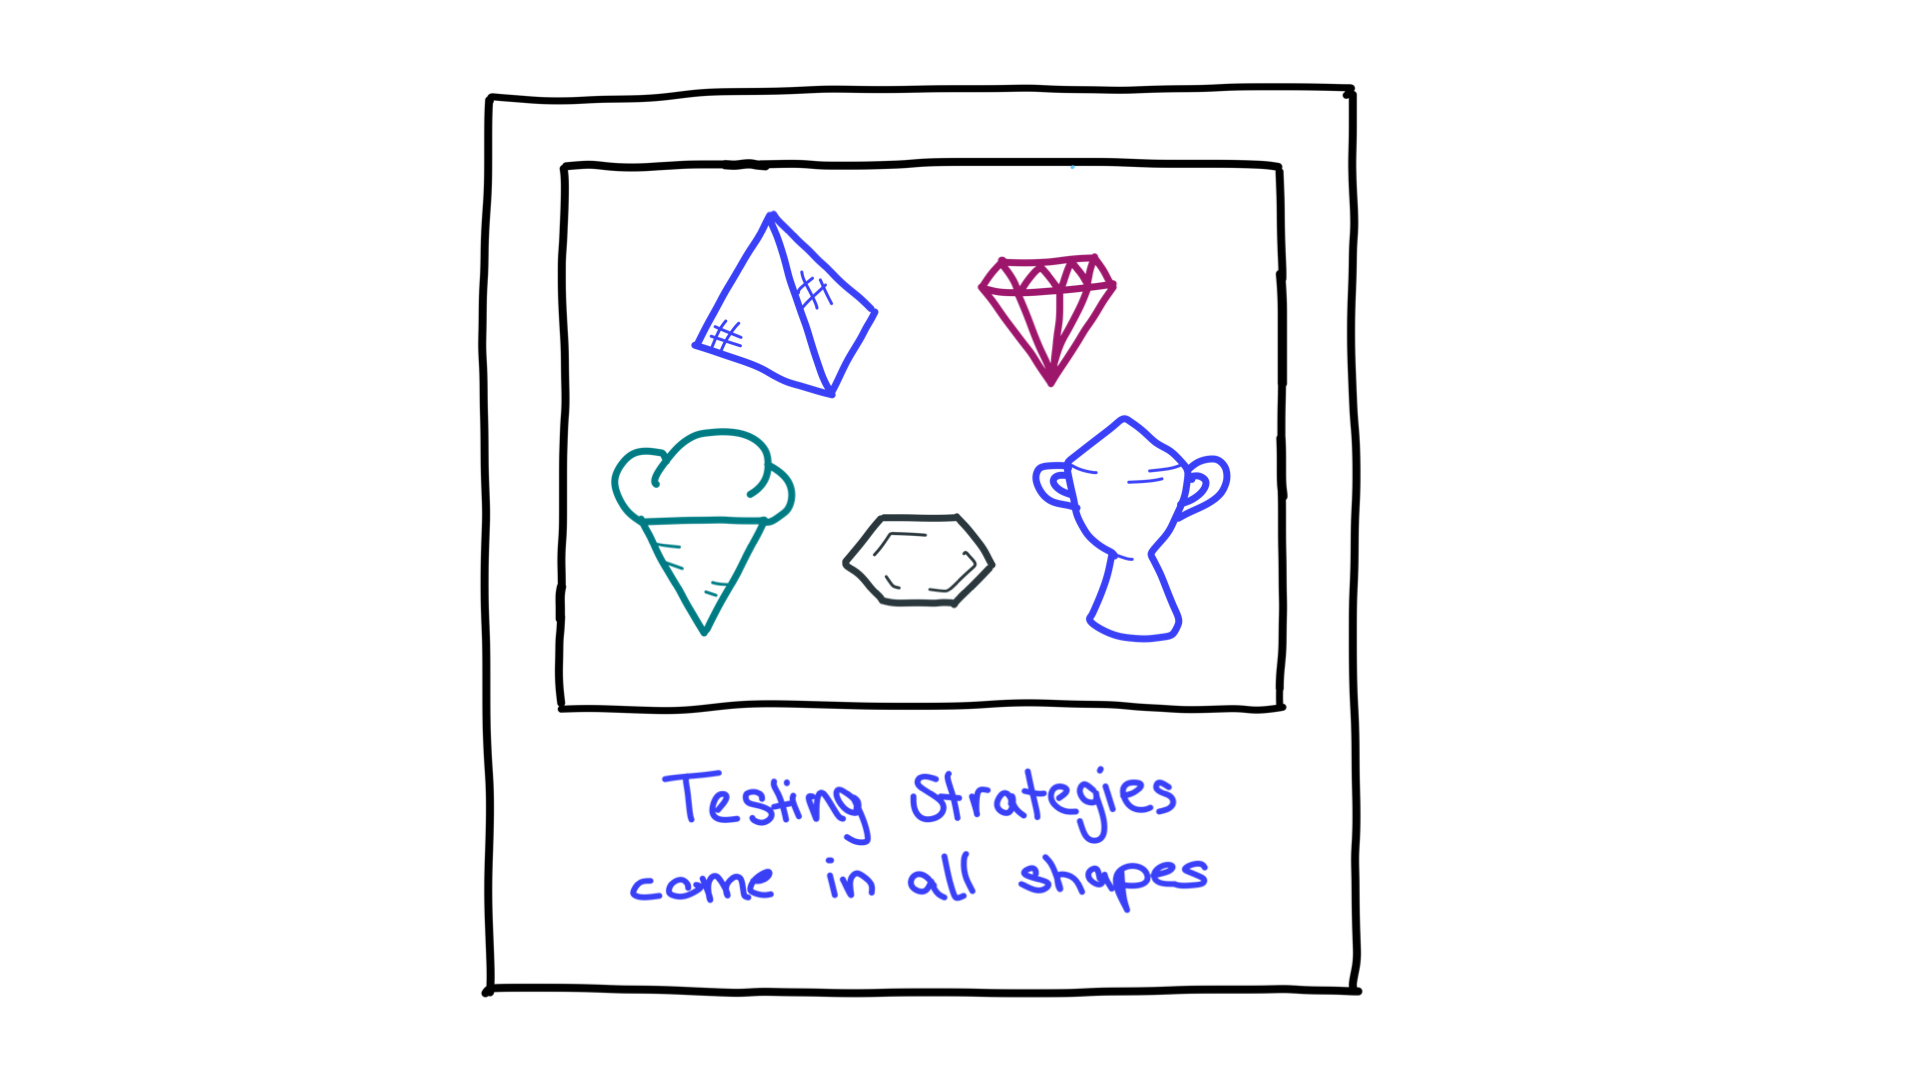 Vários formatos, como pirâmide, diamantes, cone de gelo, favos de mel e um troféu, representando estratégias de teste.